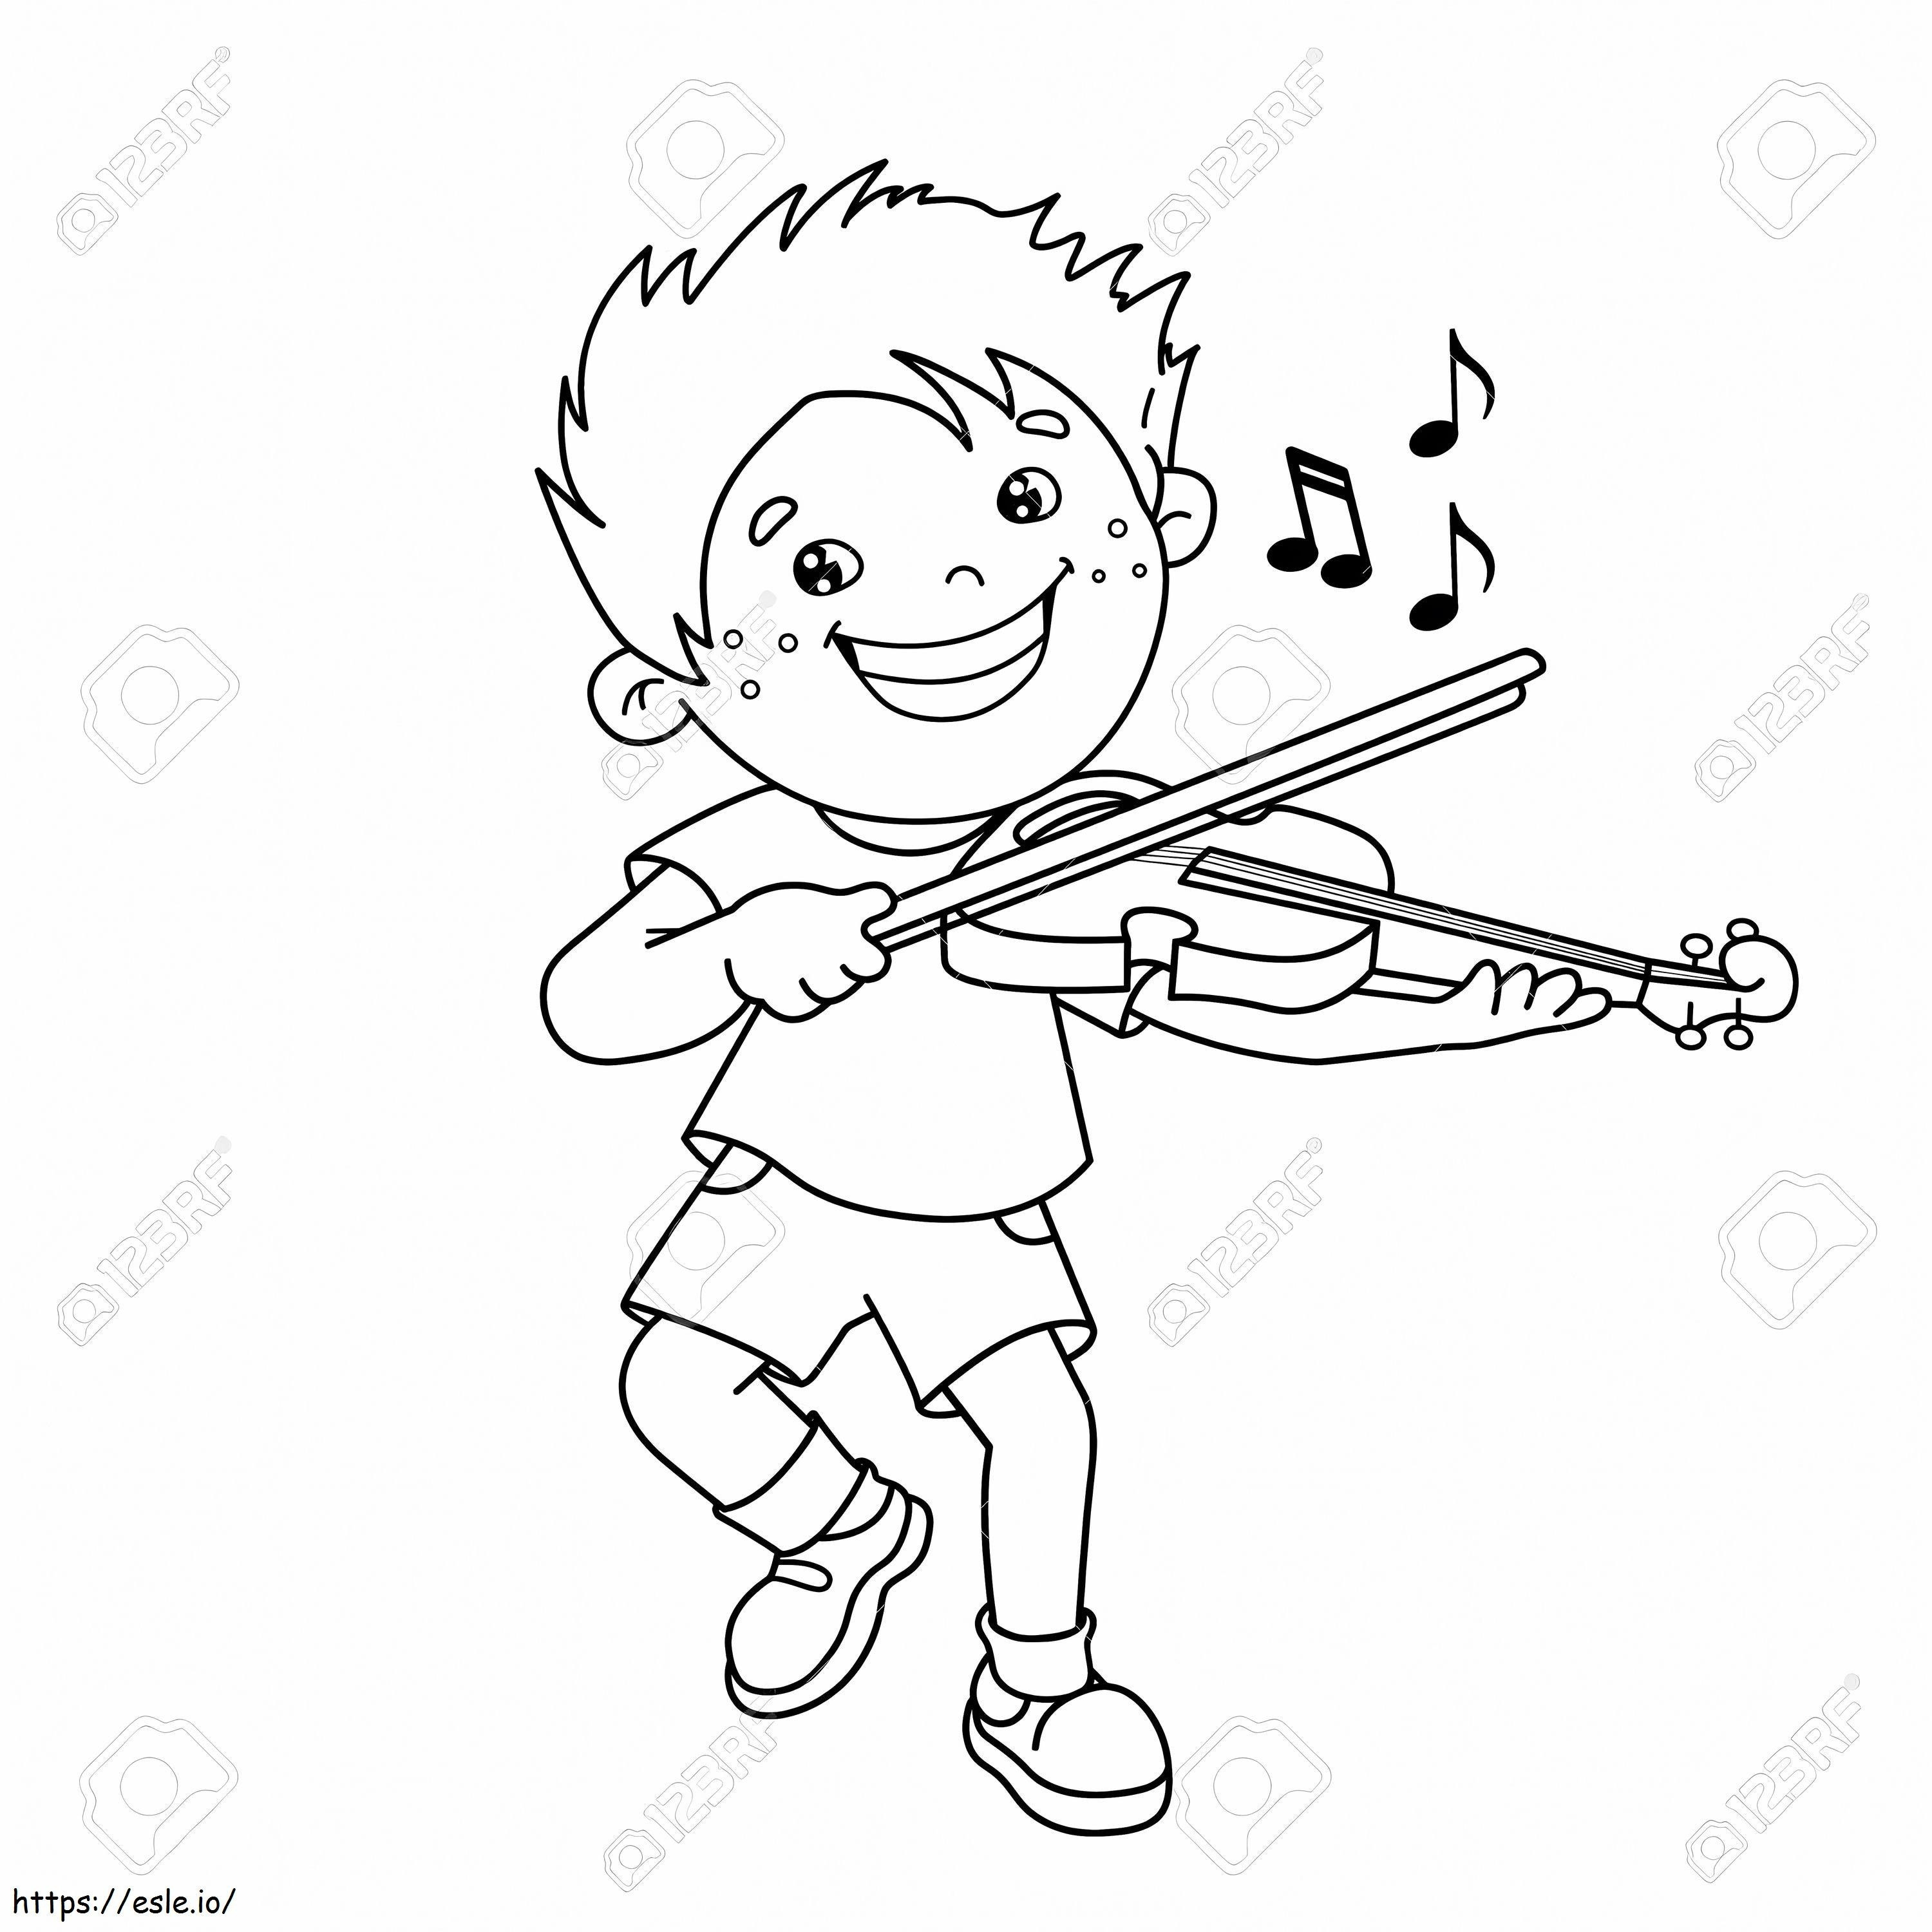 1543026113 75069501 ヴァイオリン楽器の塗り絵を演奏する漫画少年の概要 ぬりえ - 塗り絵